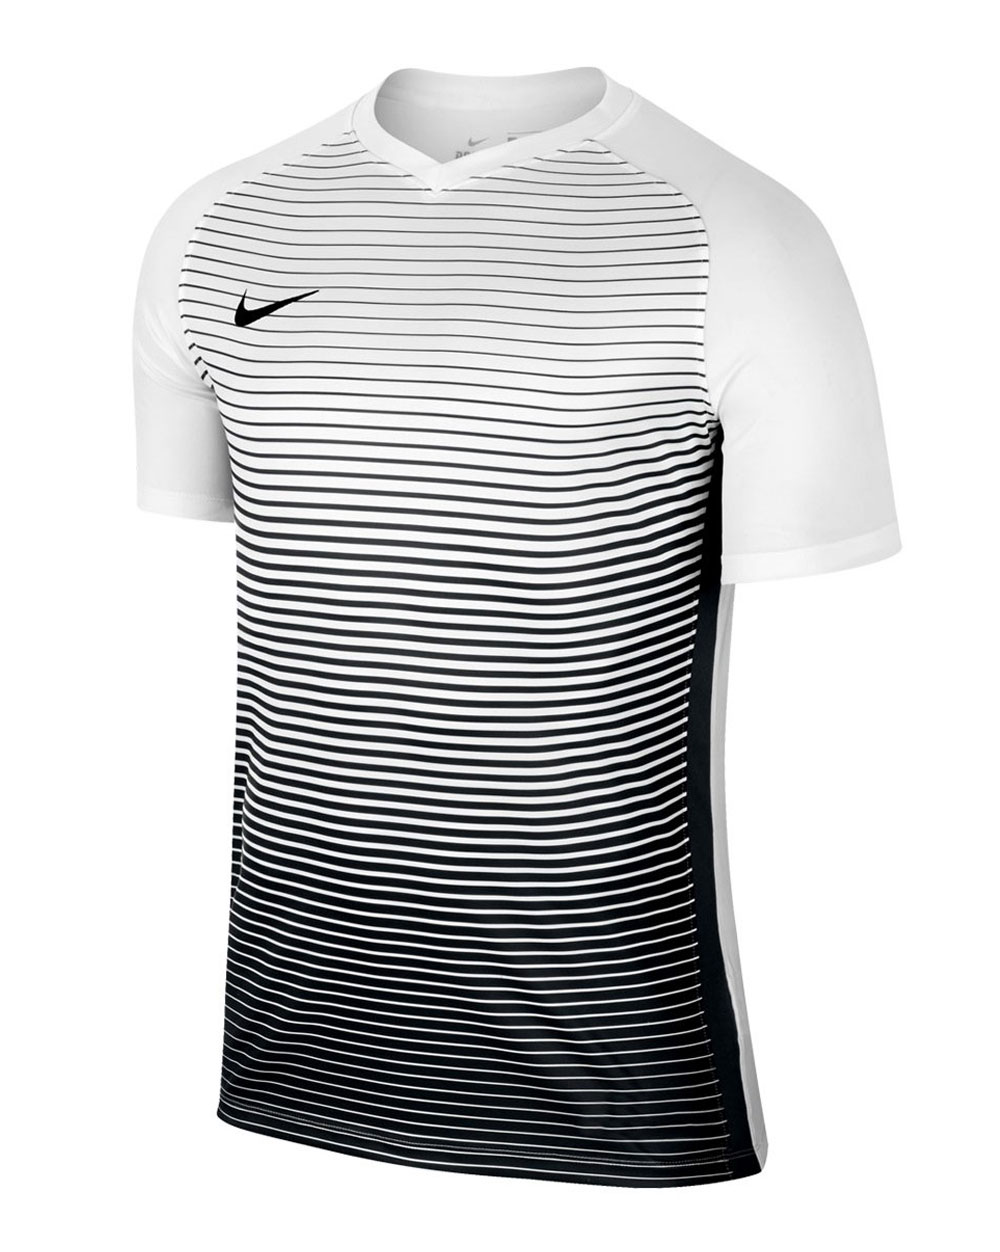 camisetas nike futbol blanco Hombre Mujer niños - Envío gratis y entrega  rápida, ¡Ahorros garantizados y stock permanente!